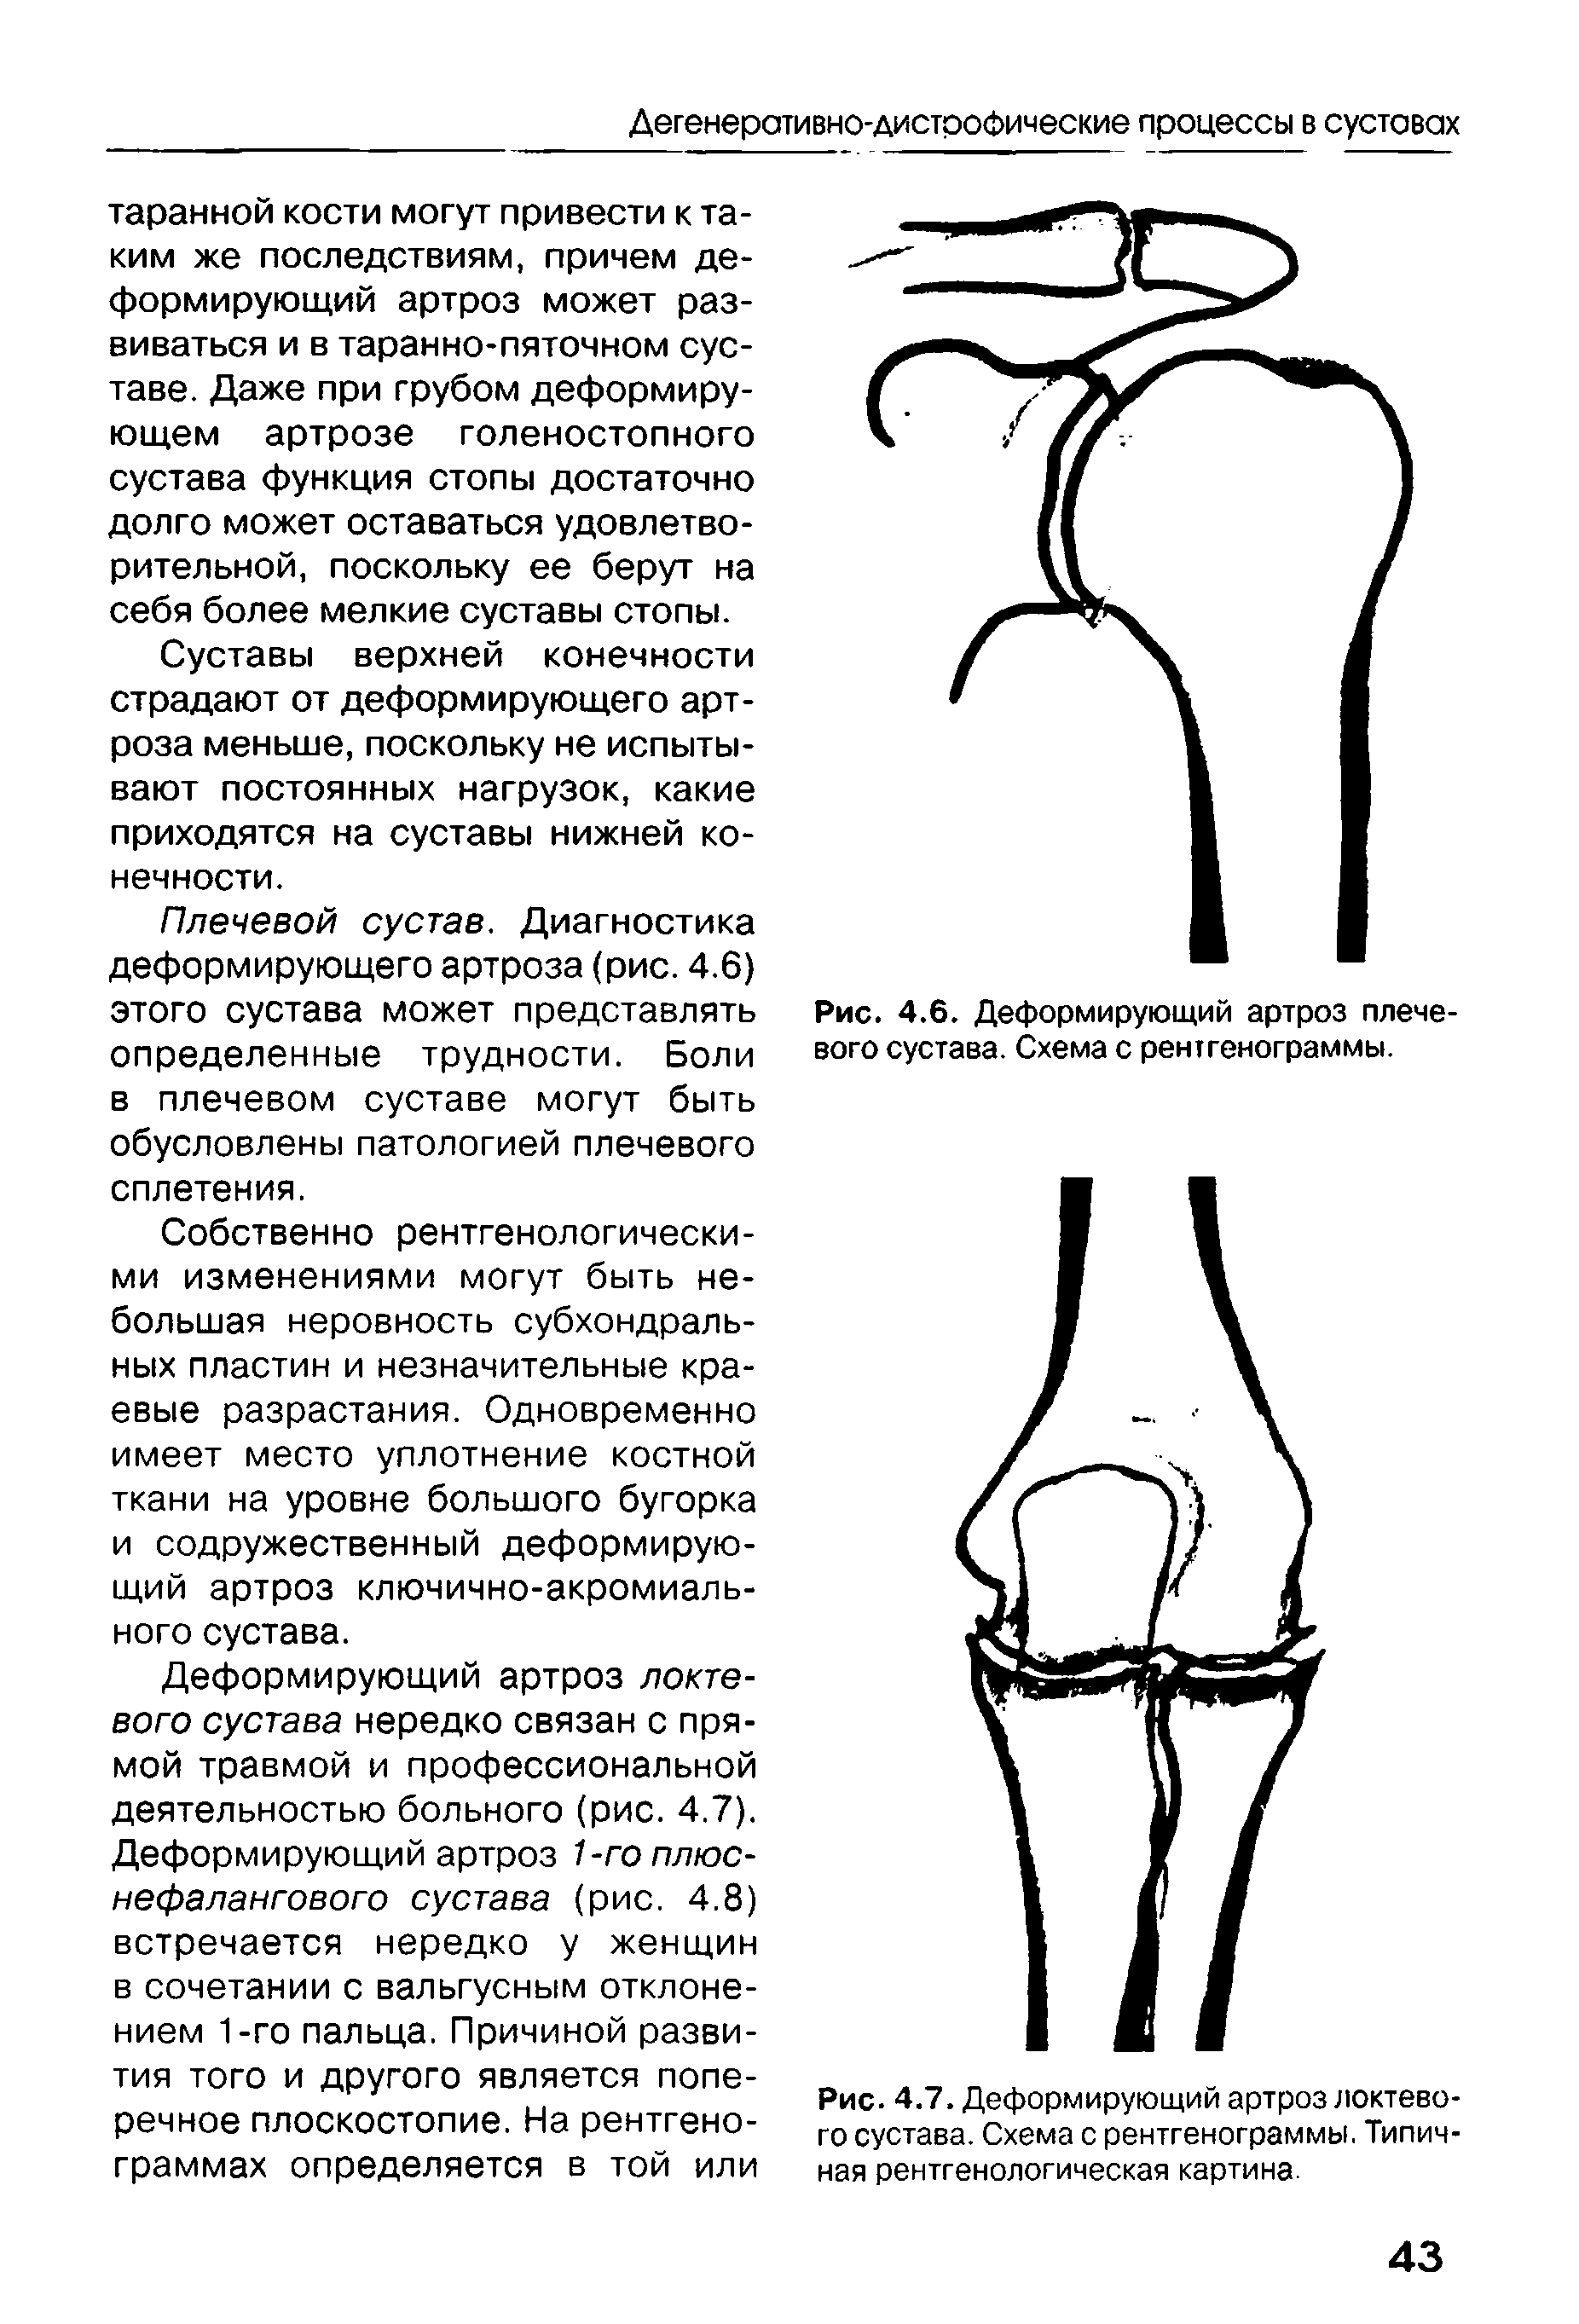 Рис. 4.7. Деформирующий артроз локтевого сустава. Схема с рентгенограммы. Типичная рентгенологическая картина.